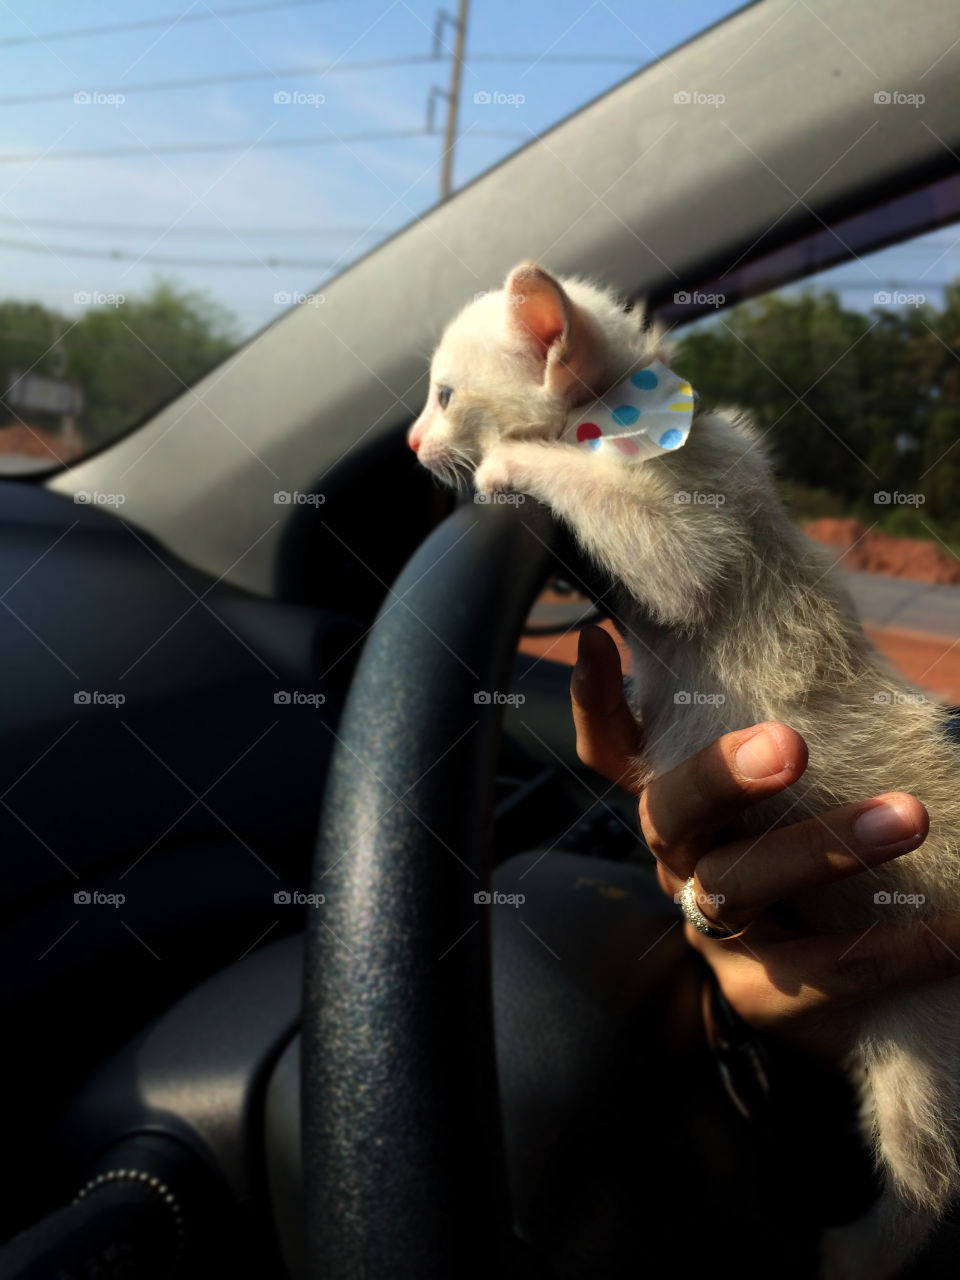 Kitty in a car